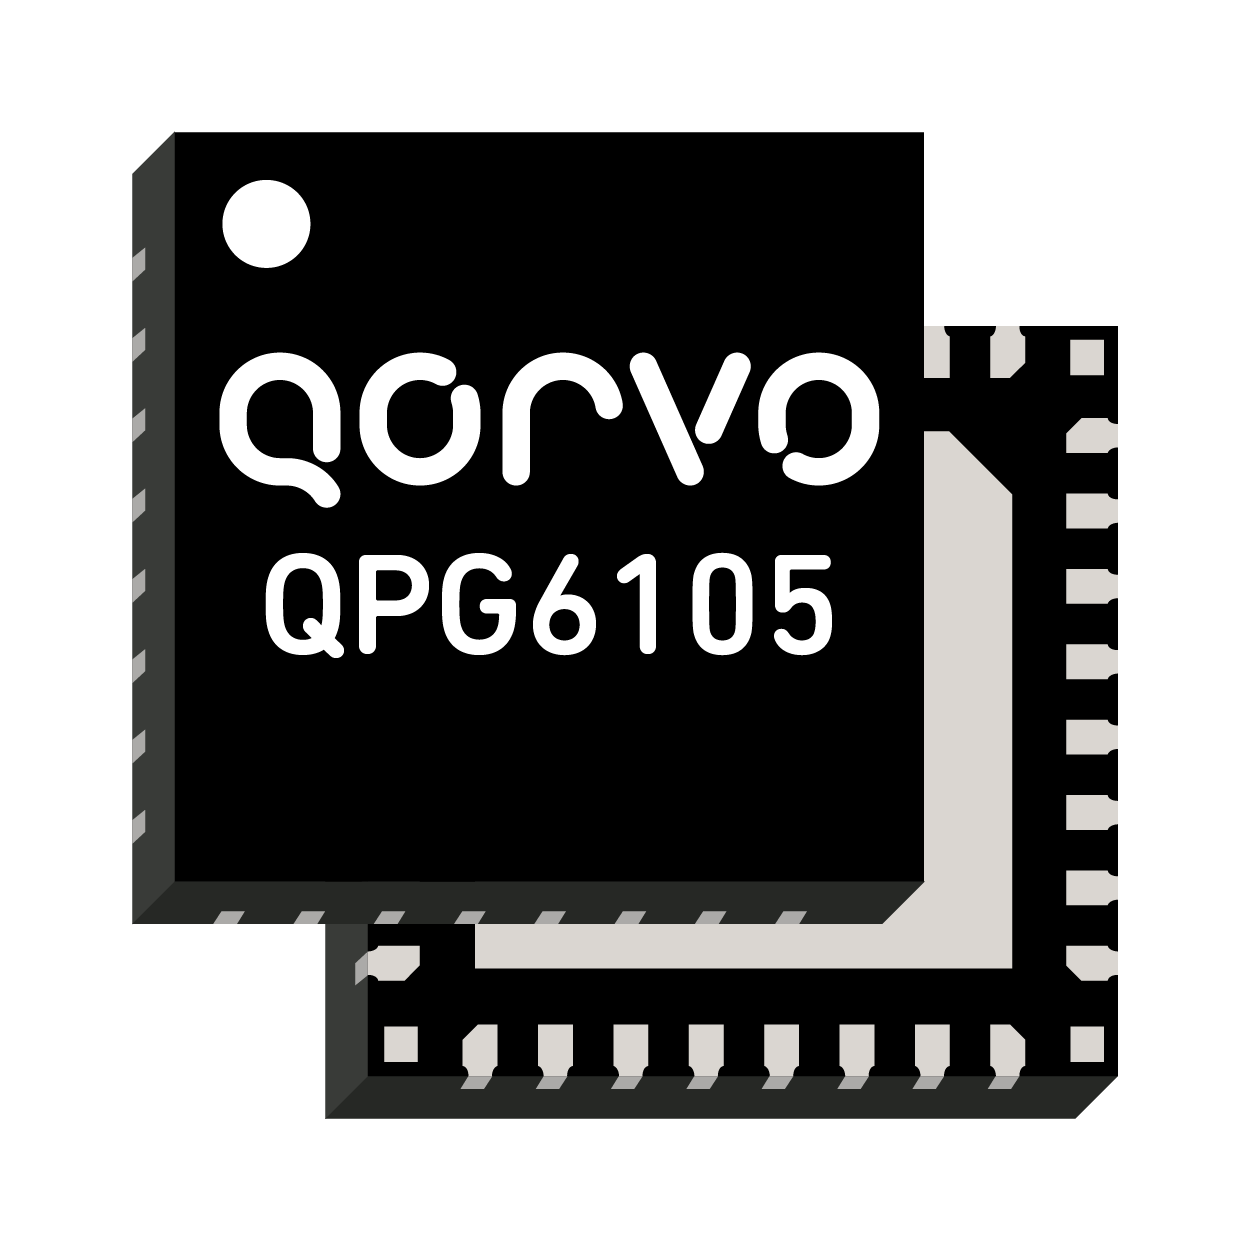 QPG6105